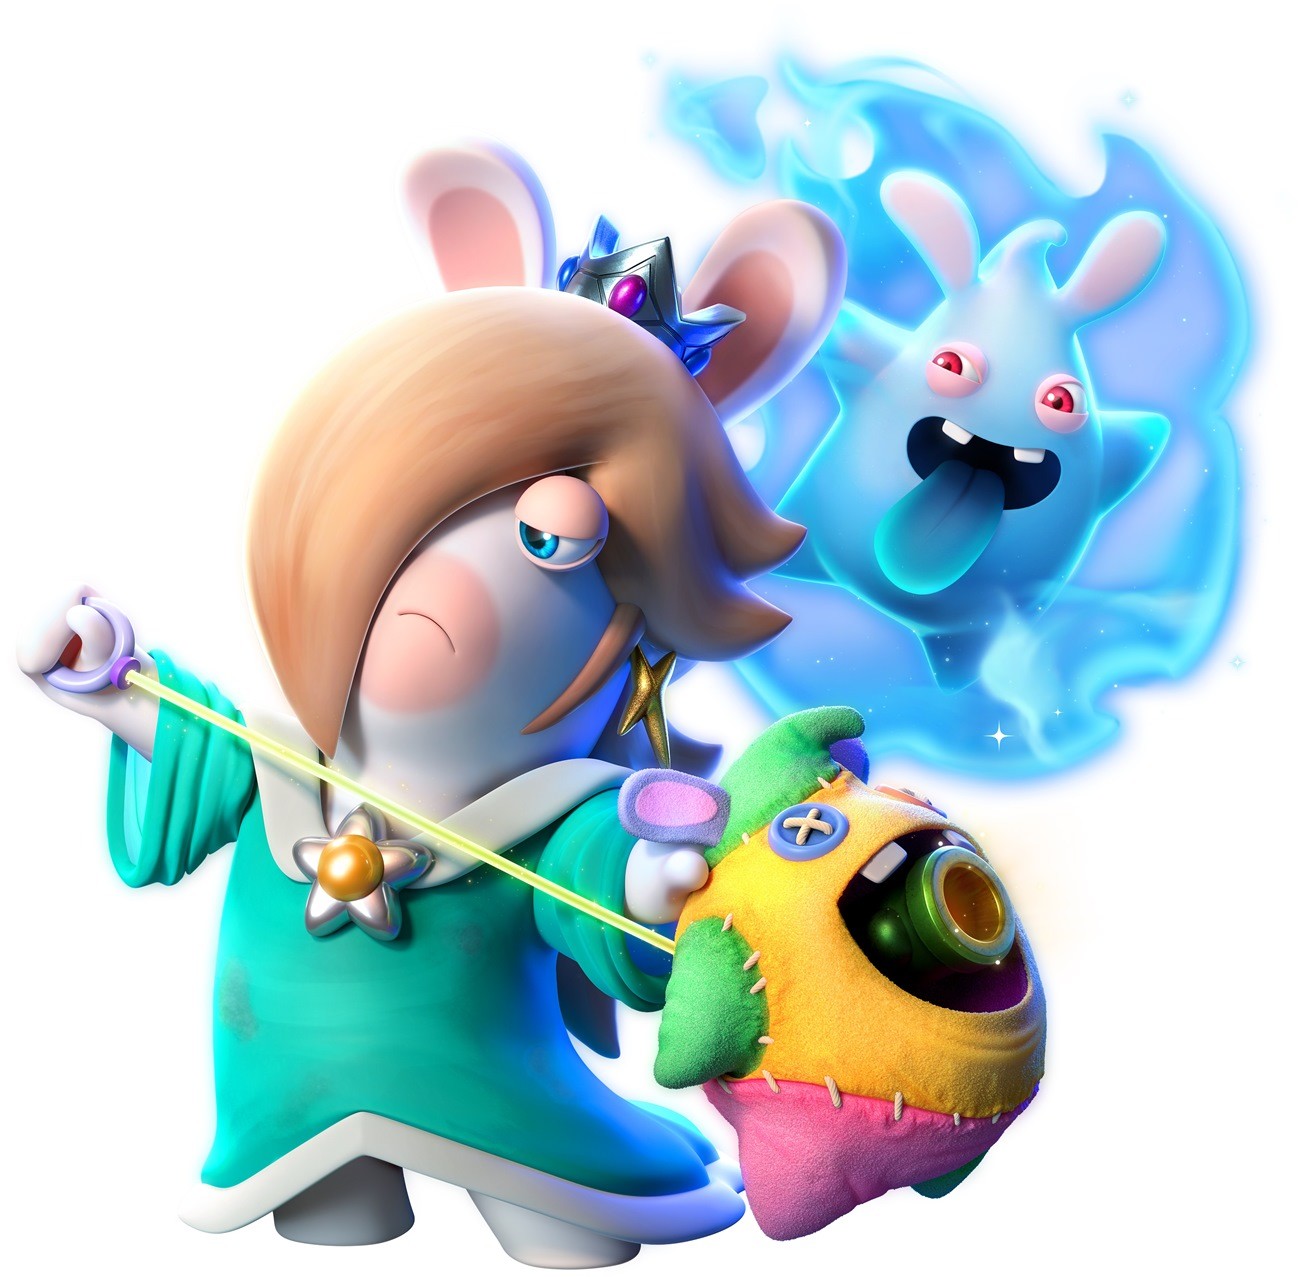 策略遊戲《瑪利歐+瘋狂兔子星耀之願》官方公佈藝術圖